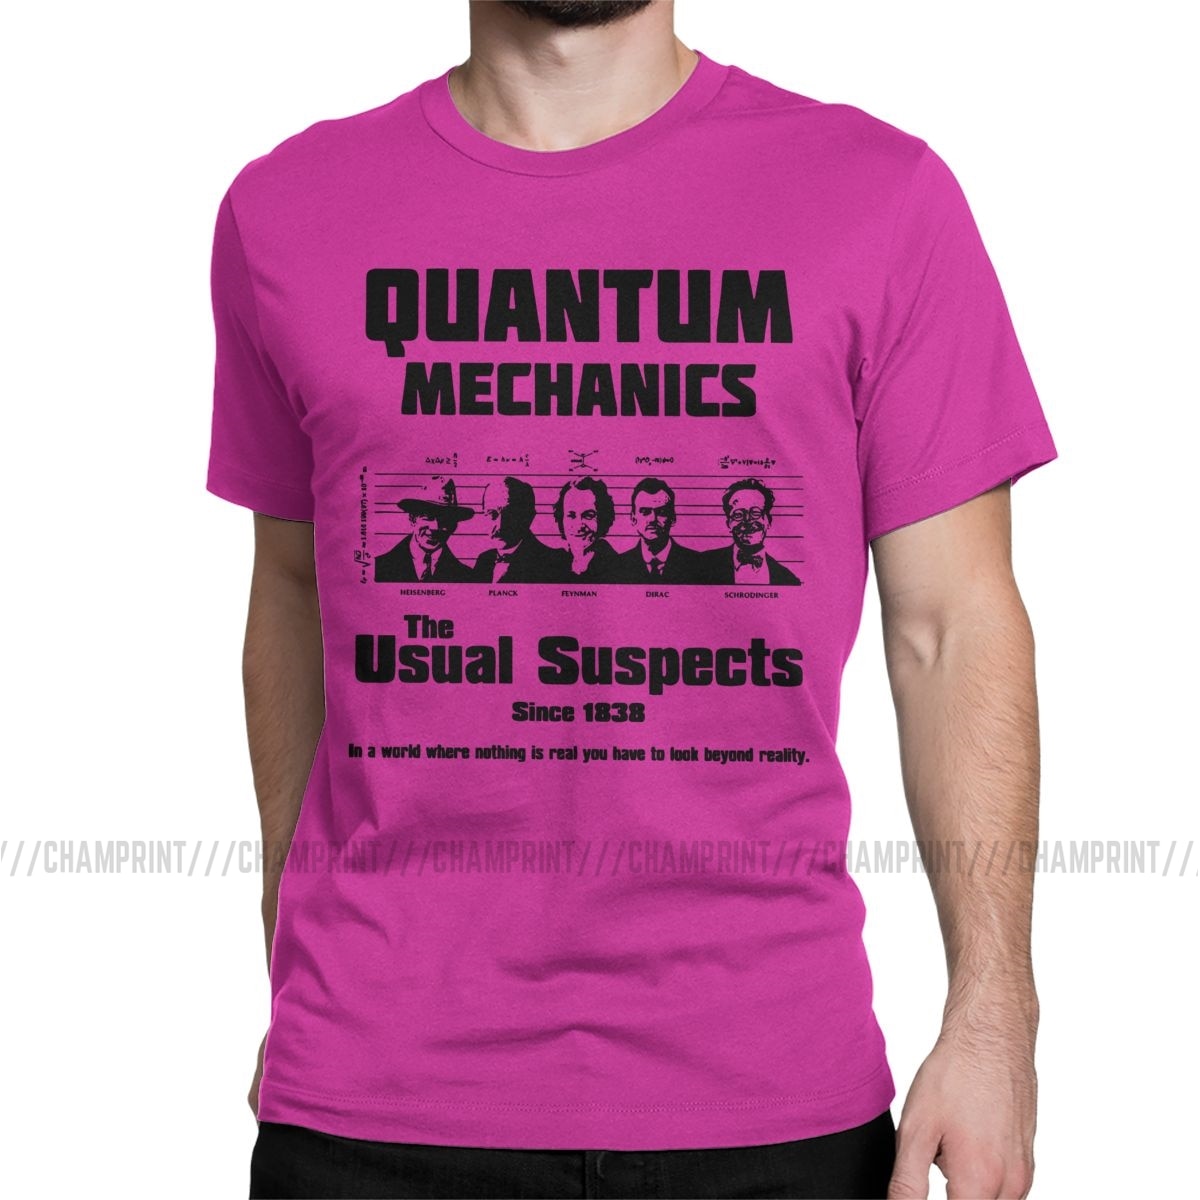 Fuchsia "The Usual Suspects" Quantum Mechanics T-Shirt